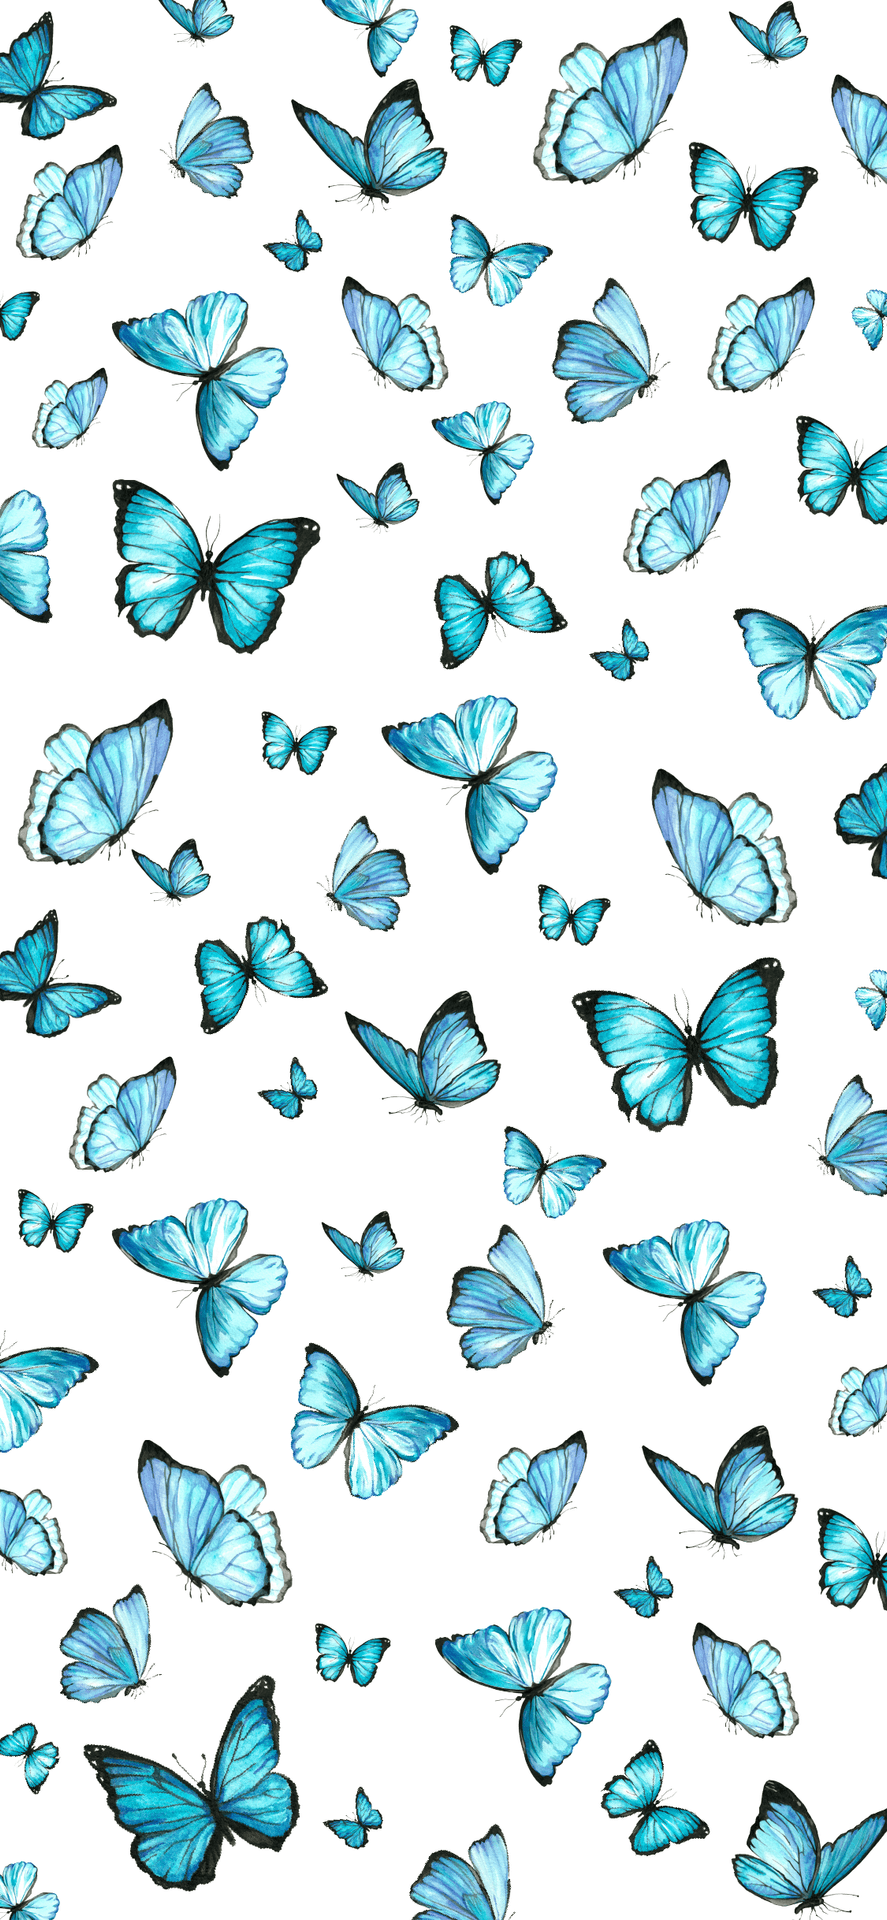 Einleuchtender Blauer Schmetterling